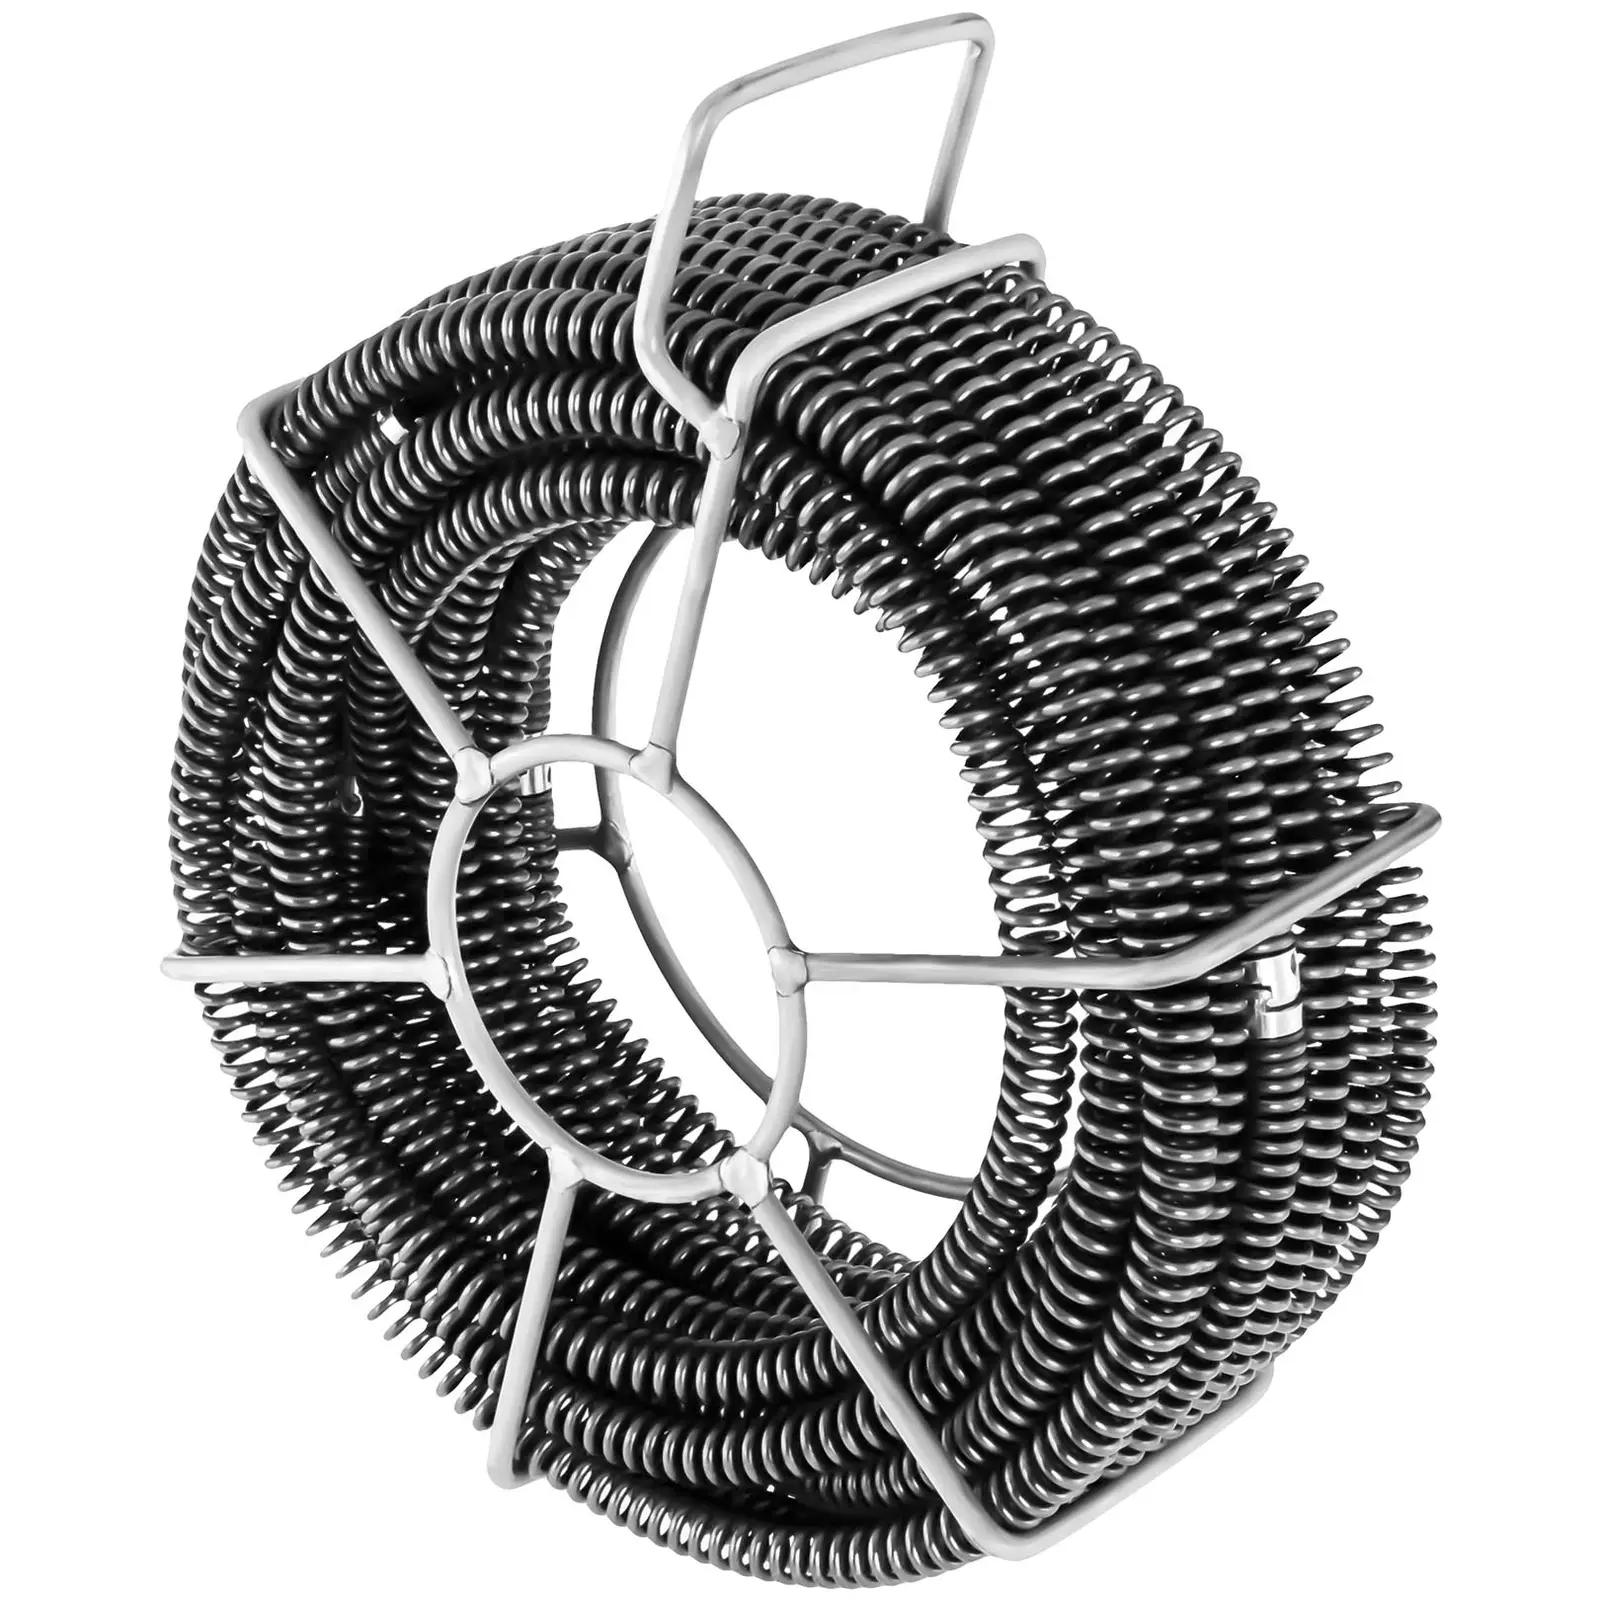 Rensspiral-set - 6 x 2,45 m - Ø 16 mm